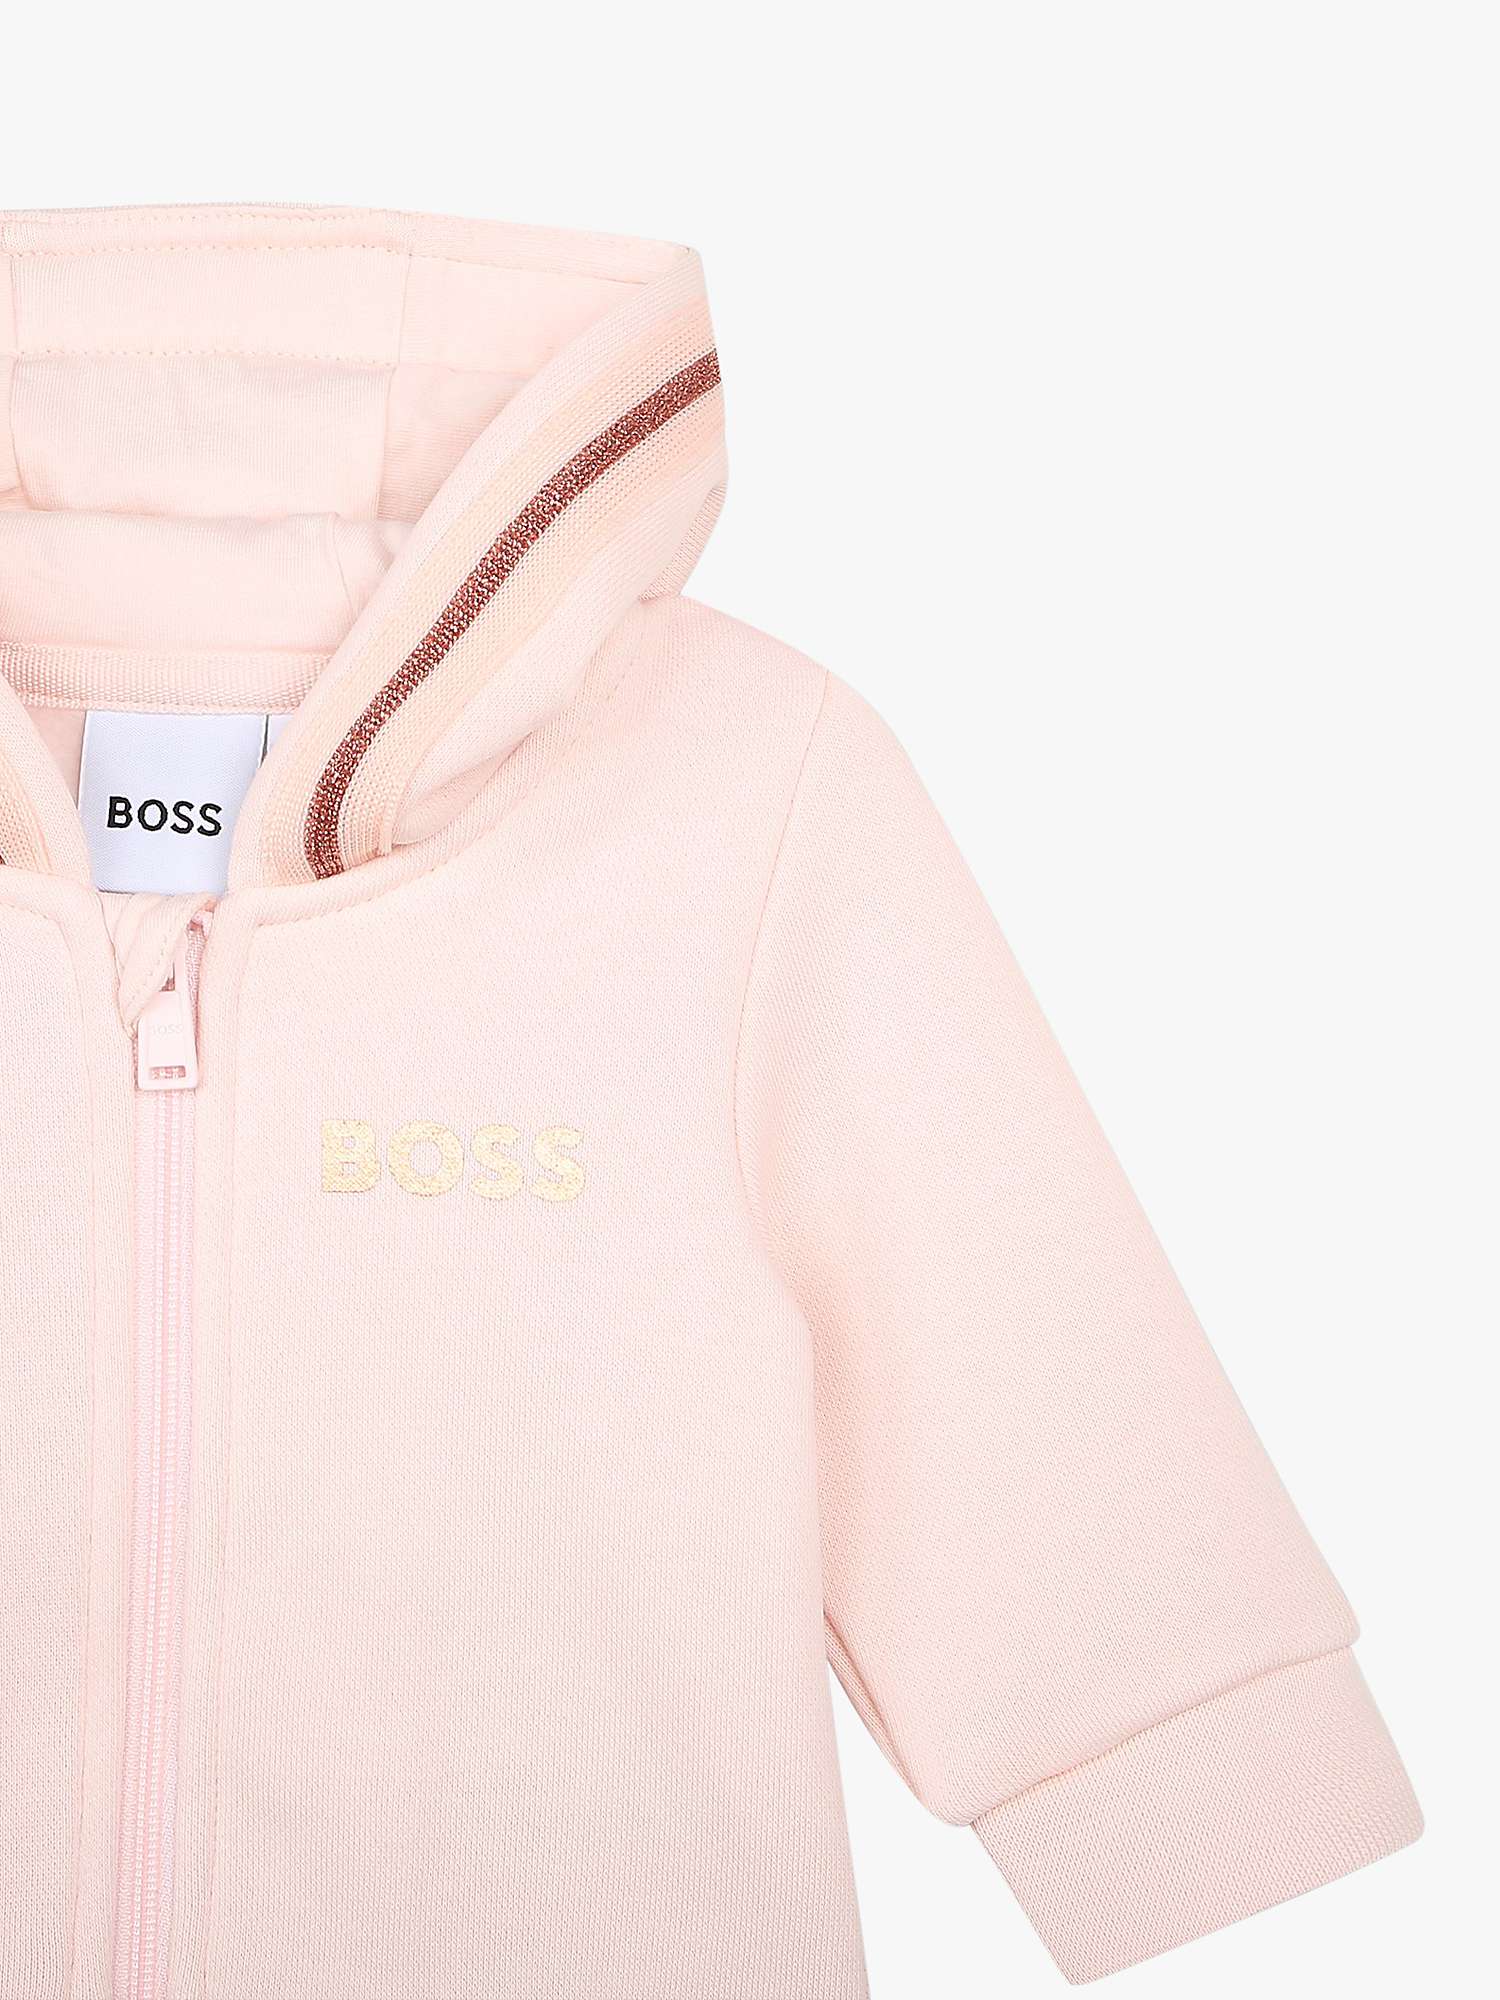 Buy BOSS Baby Fleece Zip Through Hooded Jogging Cardigan, Pink Online at johnlewis.com